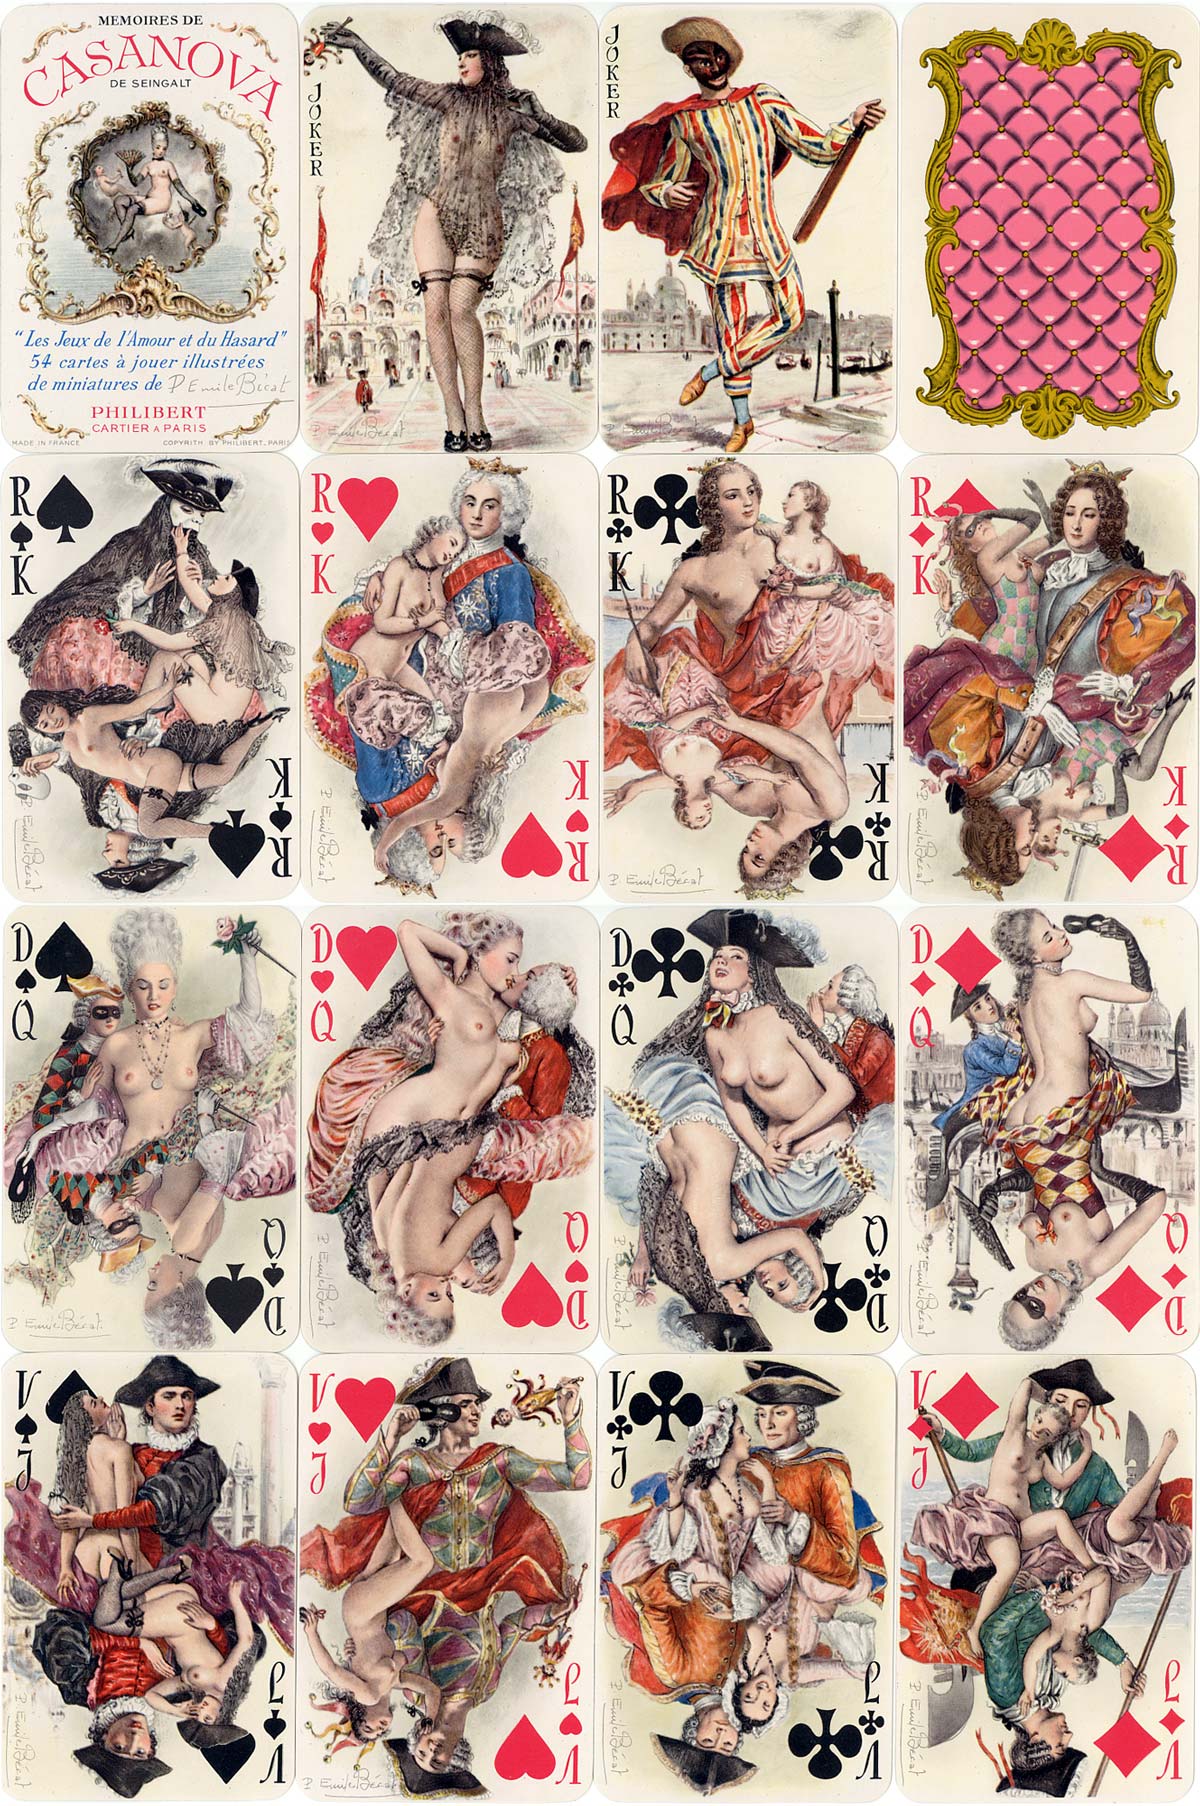 Mémoires de Casanova artistic and lightly risqué playing cards with paintings by Paul-Émile Bécat, published by Éditions Philibert, Paris, c.1960. 